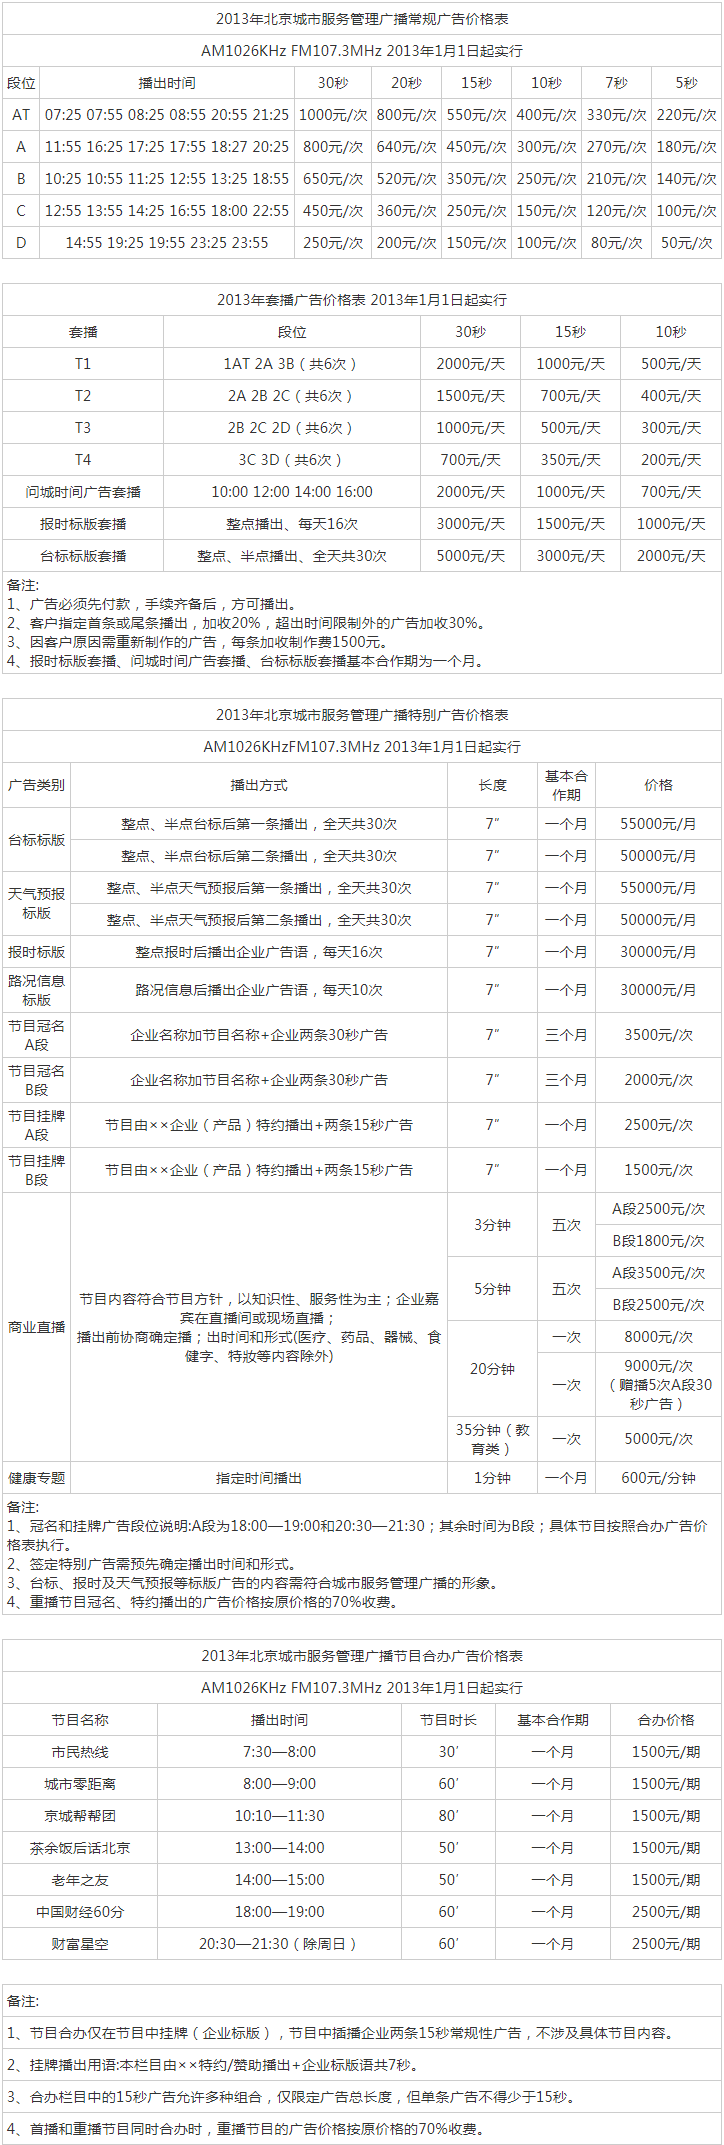 2013北京人民广播电台城市管理频率 FM107.3广告报价表.png